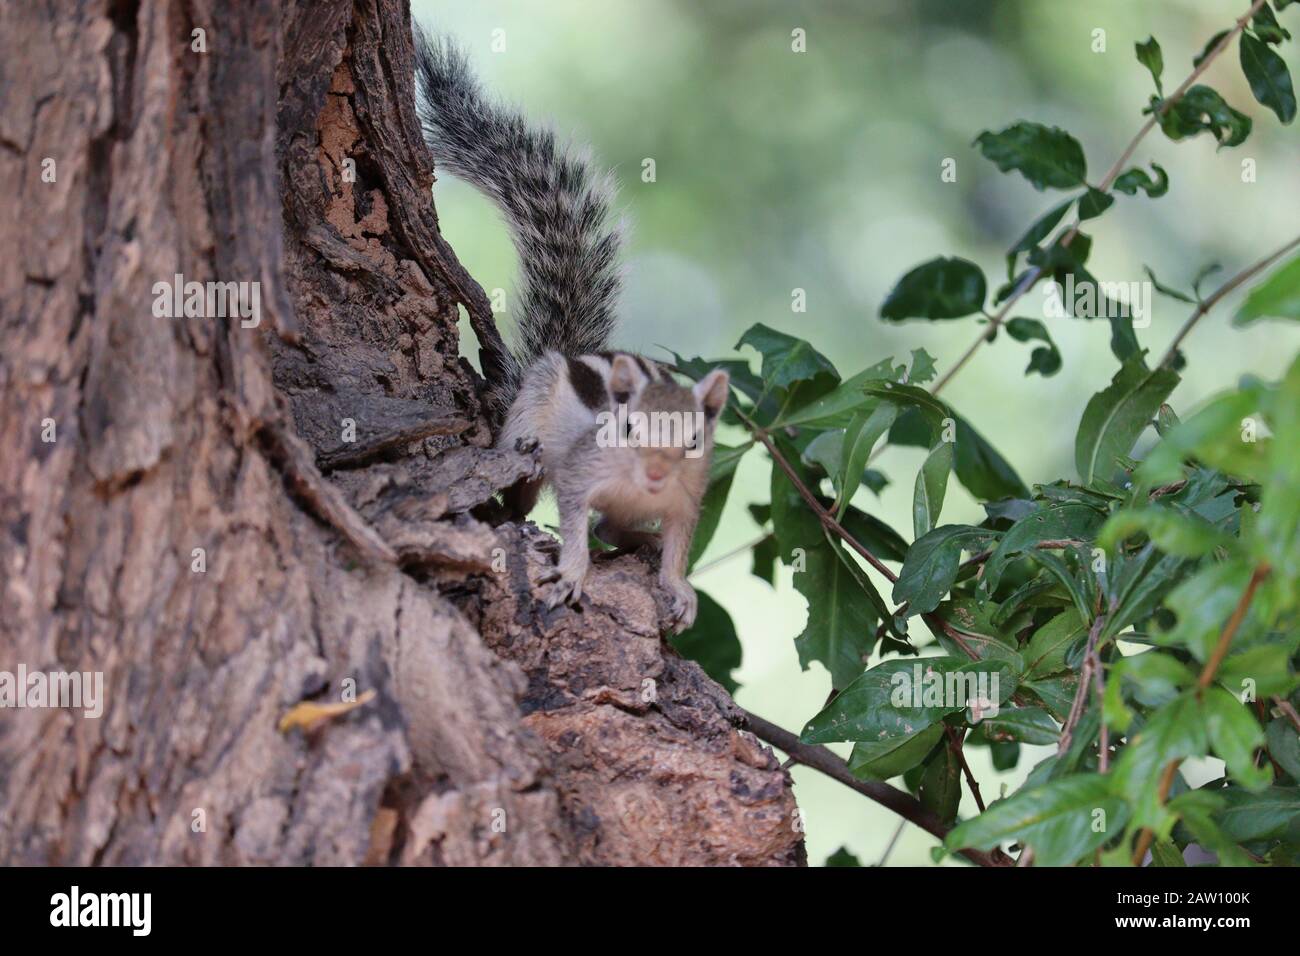 gros plan d'un écureuil brun debout sur l'arbre en nature ouverte, plein air animaux de rue, images d'écureuil Banque D'Images